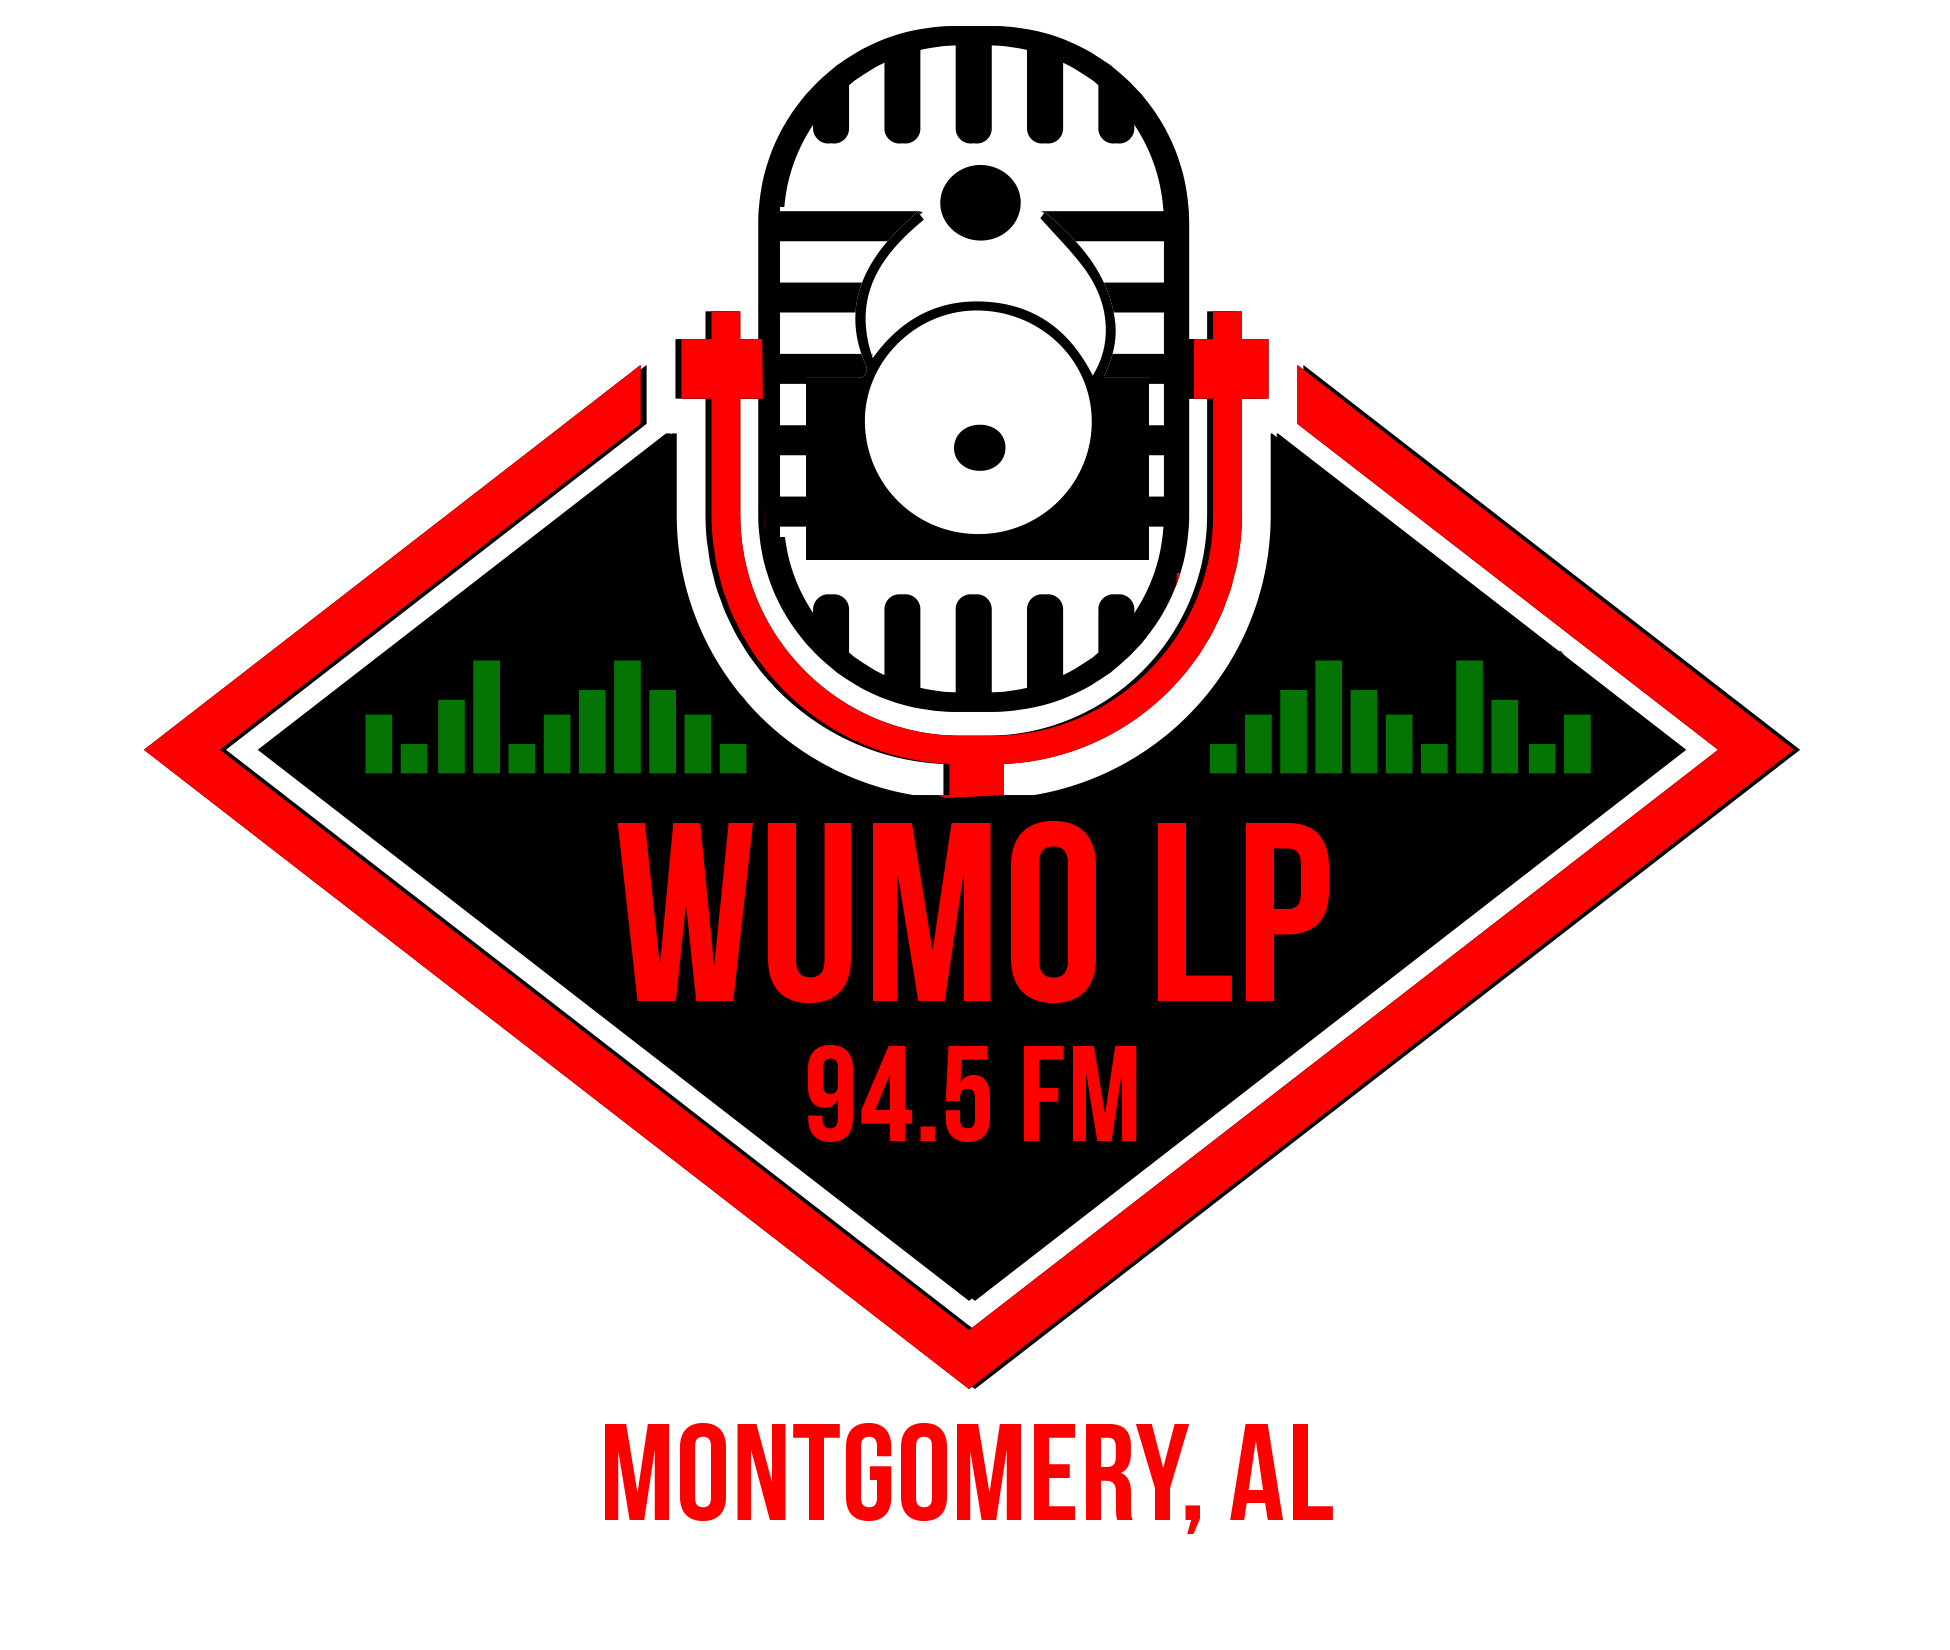 WUMO LP-FM